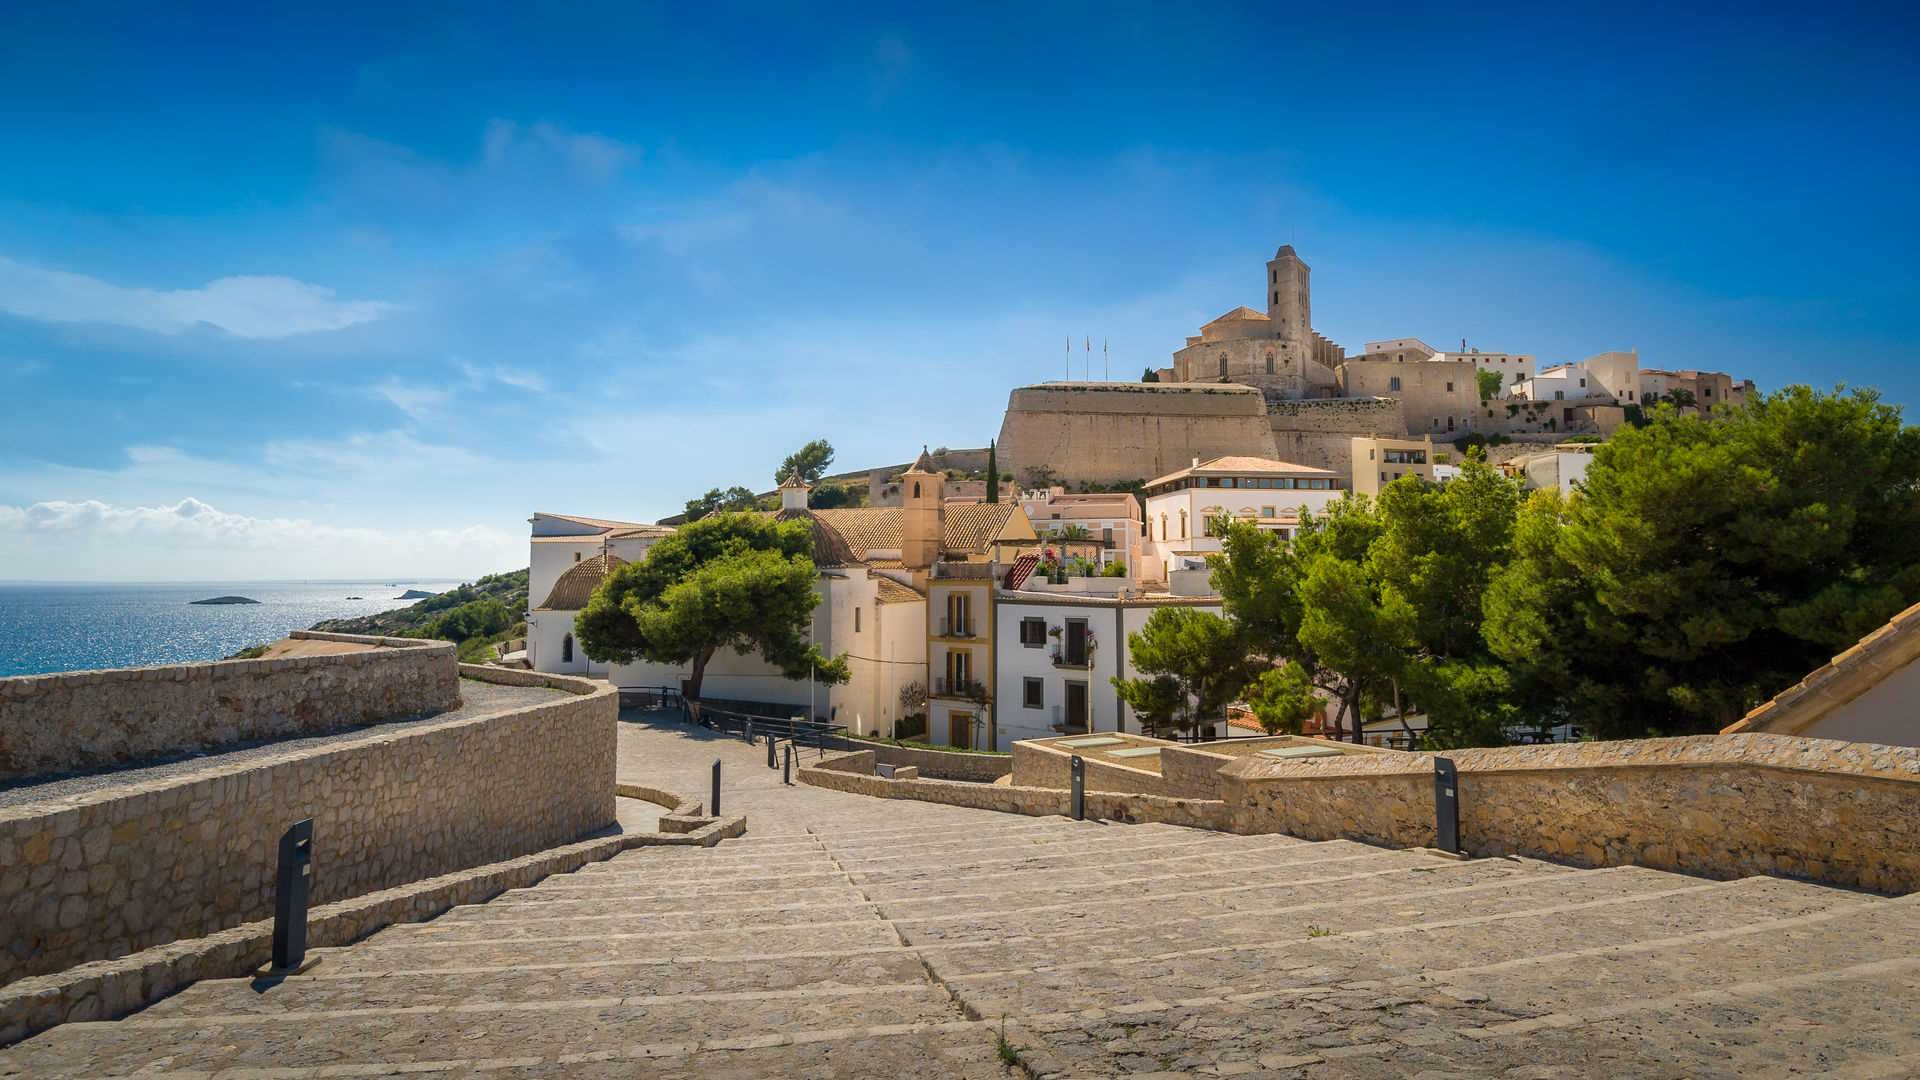 Uno de los recorridos más atractivos de Ibiza es el perímetro de la muralla renacentista y los 7 baluartes que se construyeron para defender la ciudad de los ataques de los piratas turcos